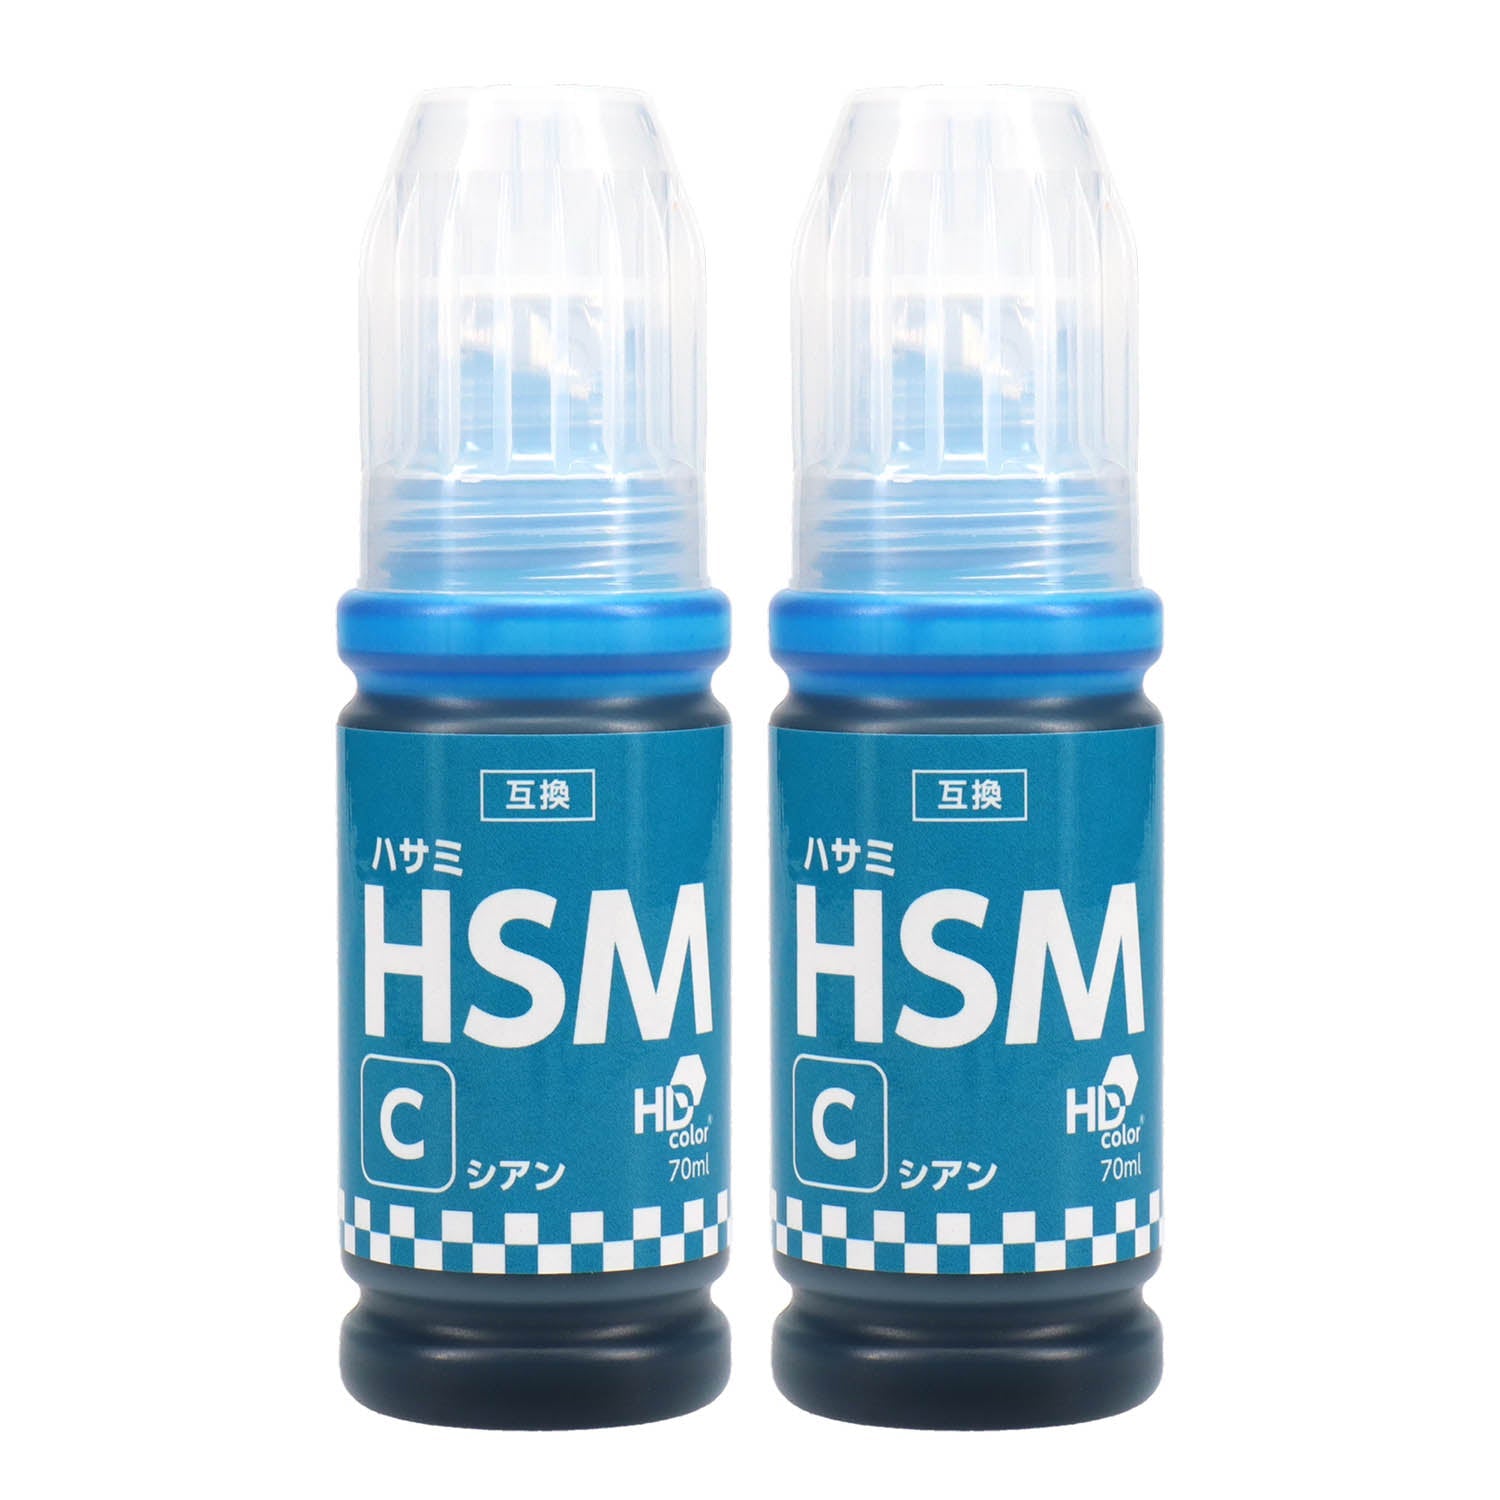 エプソン用 HSM-C (ハサミ)  互換インクボトル  シアン×2